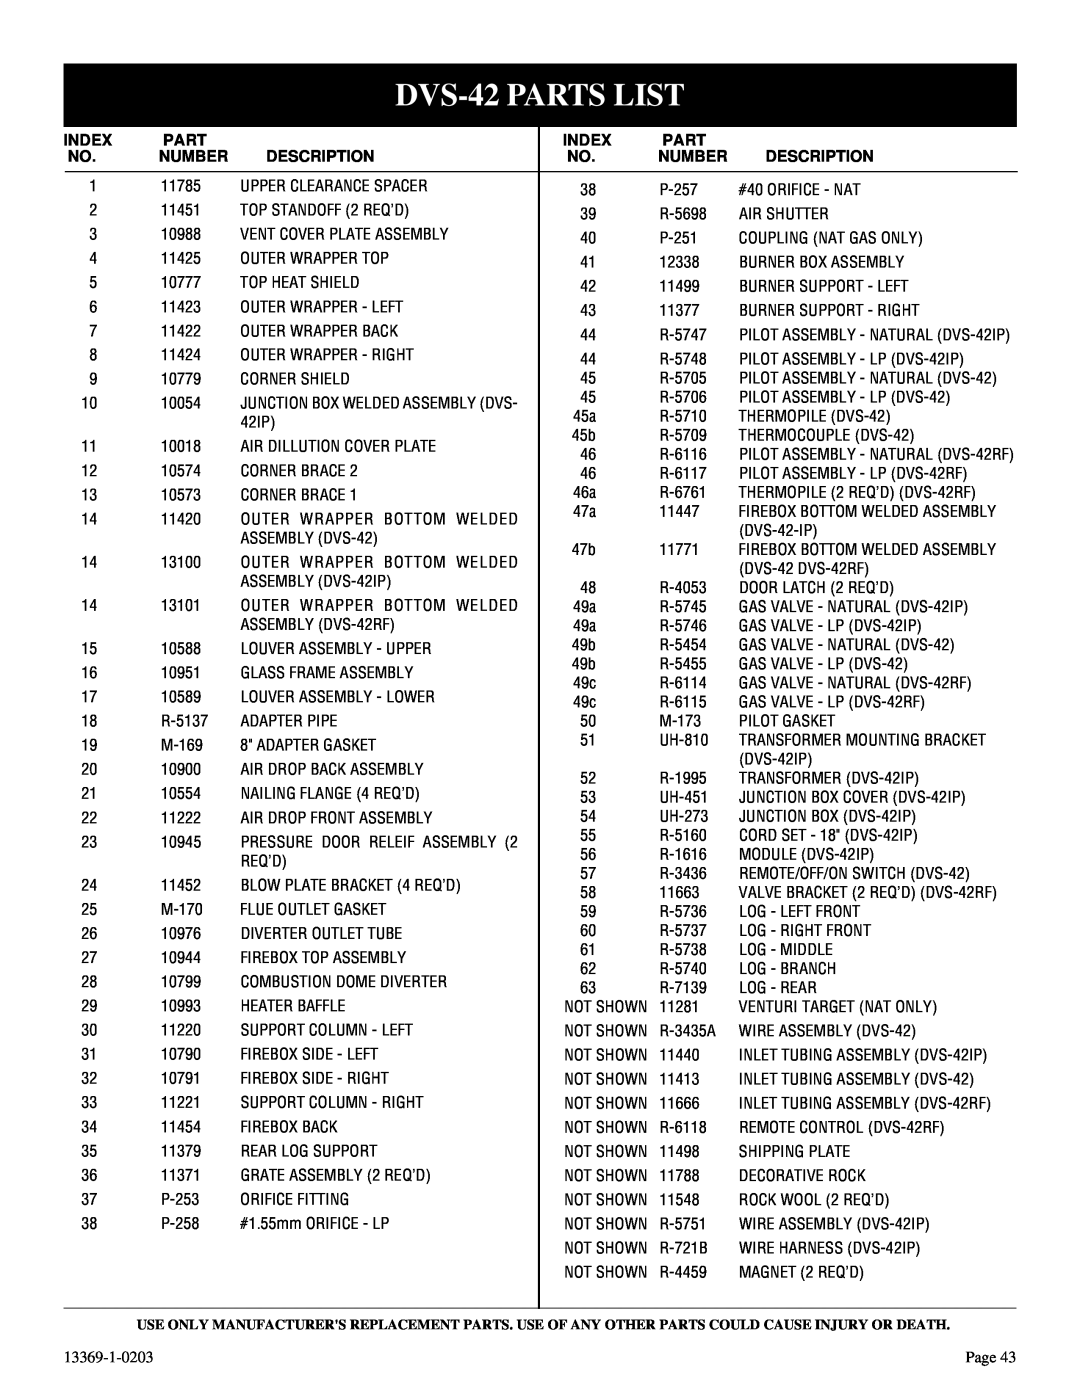 DVS 30-2 installation instructions DVS-42PARTS LIST, Index, Part, Number, Description 